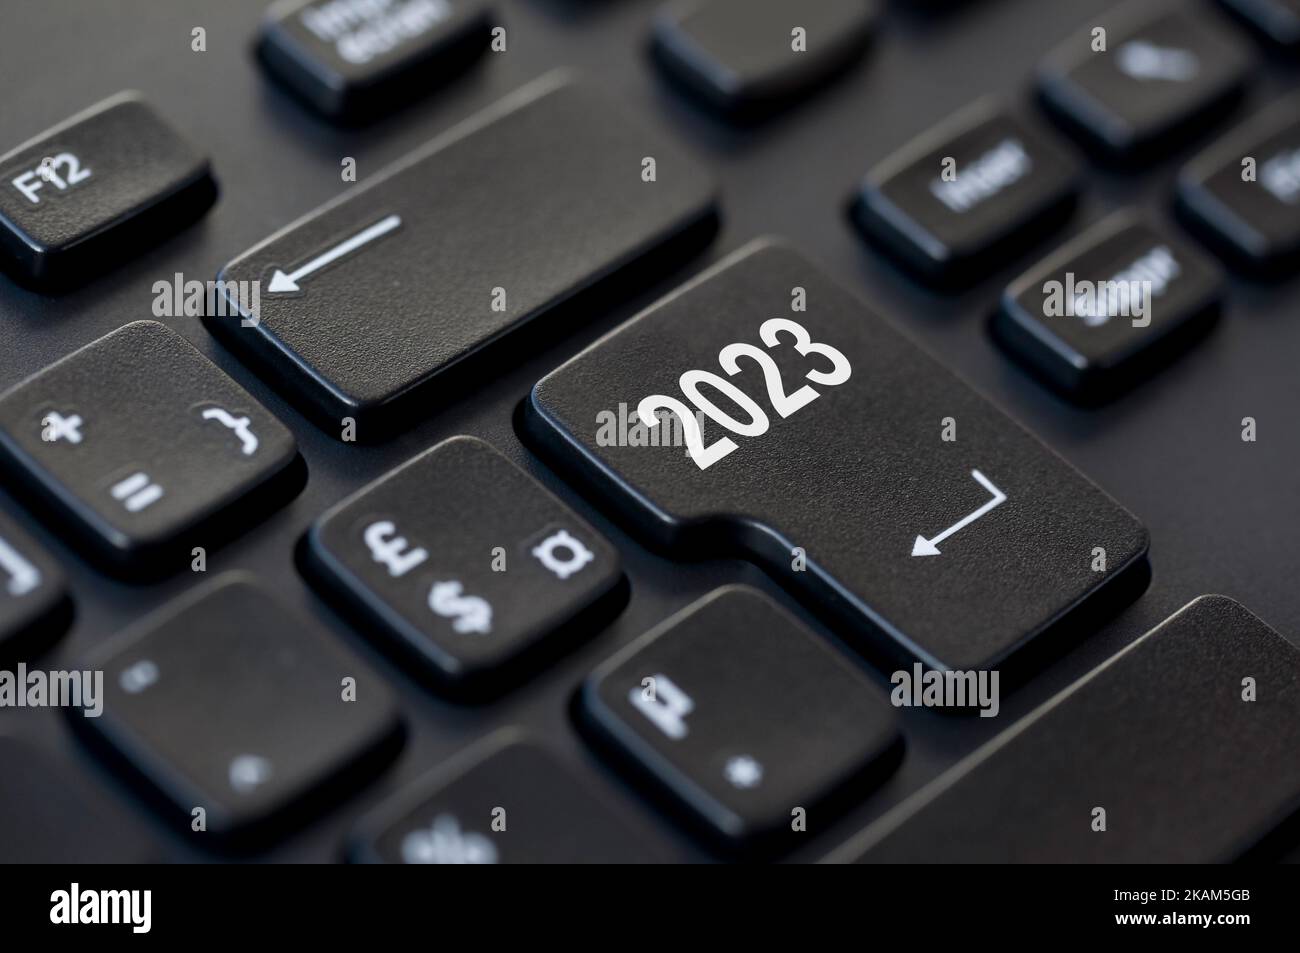 2023 écrit sur la touche entrée d'un clavier d'ordinateur, illustration de début d'année de l'entreprise Banque D'Images